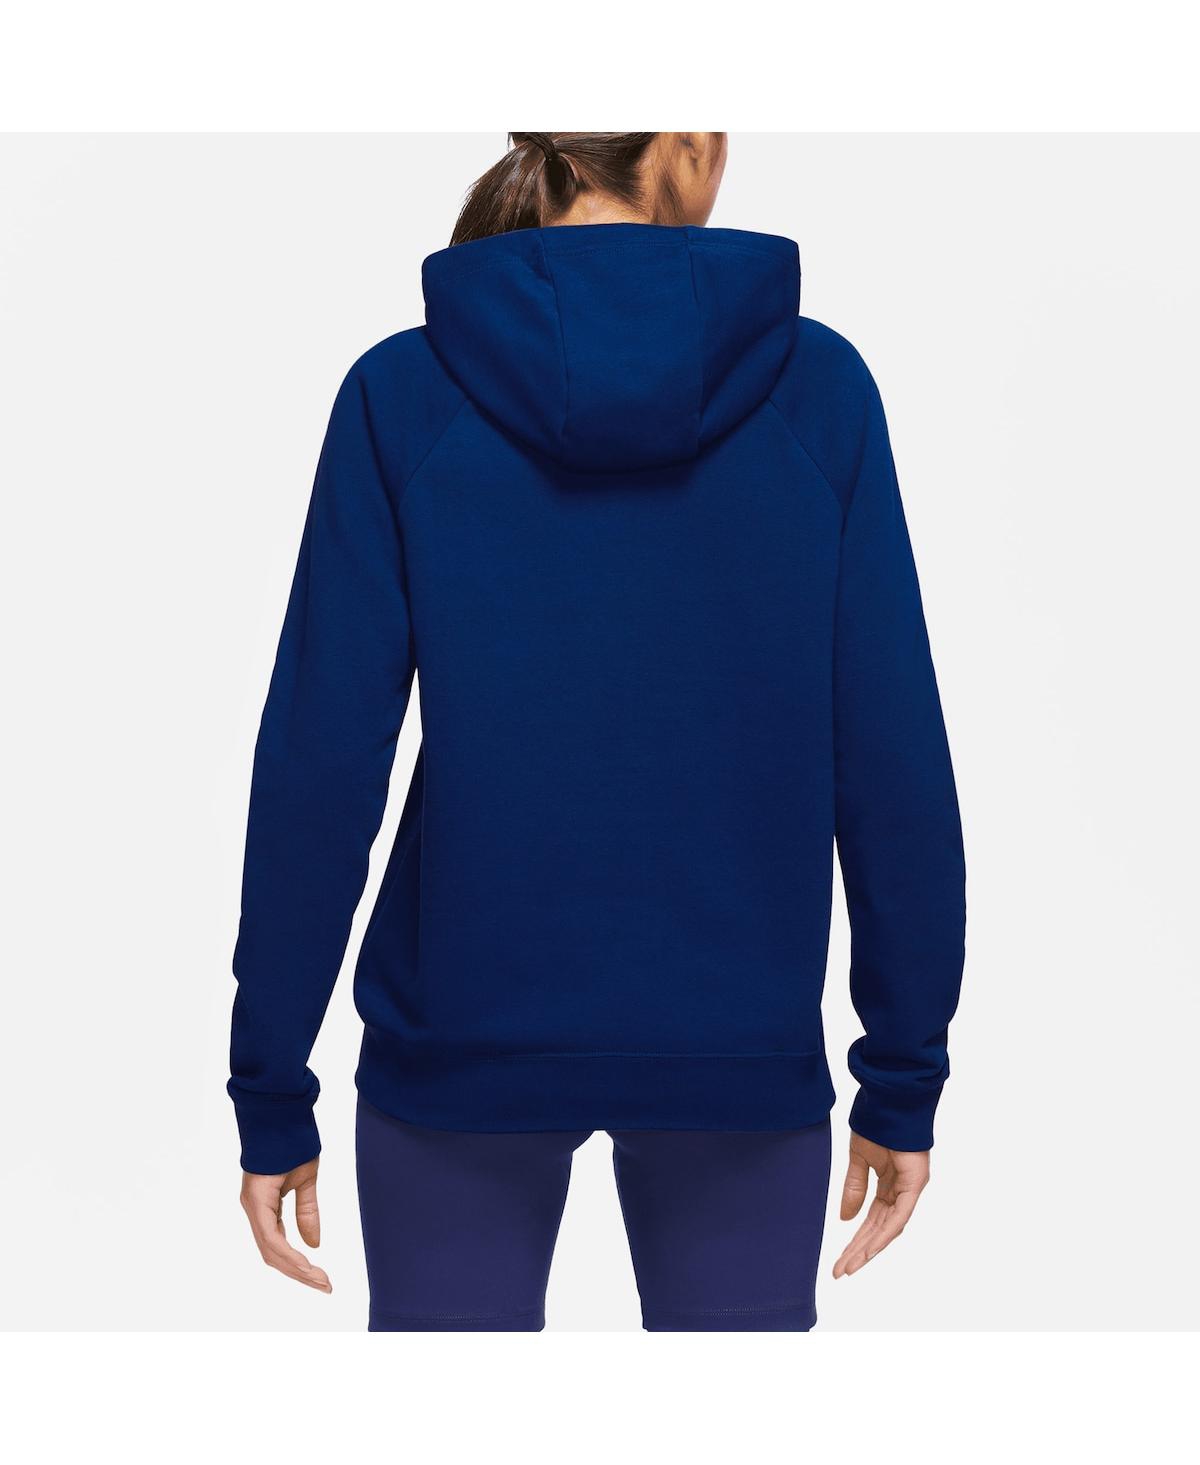 Women's Starter White/Navy New York Yankees Shutout Pullover Sweatshirt Size: Medium